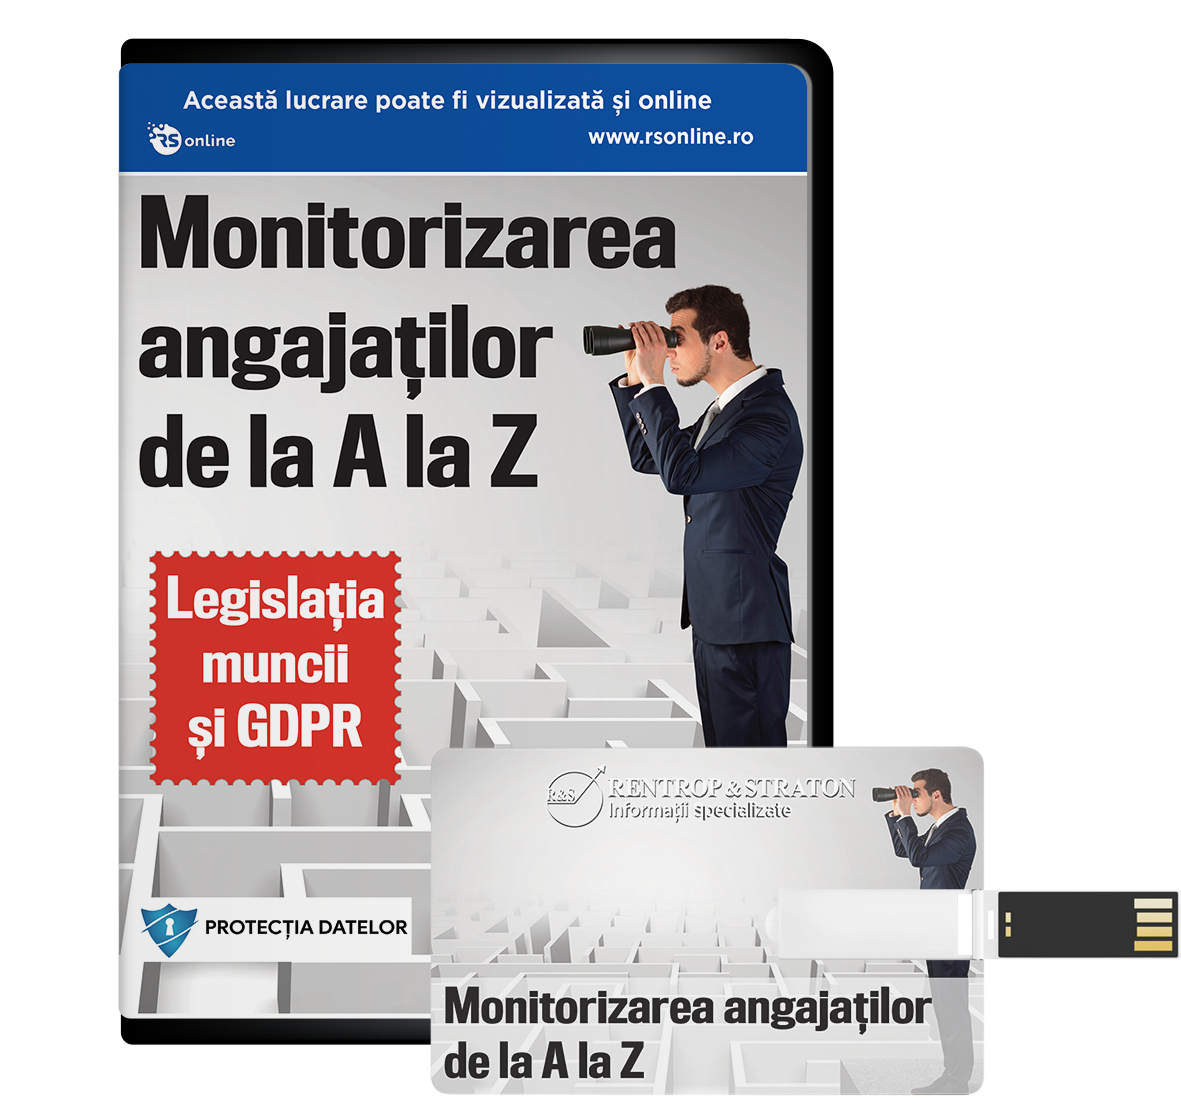 Monitorizarea Legala a angajatilor conform GDPR si Legislatia muncii